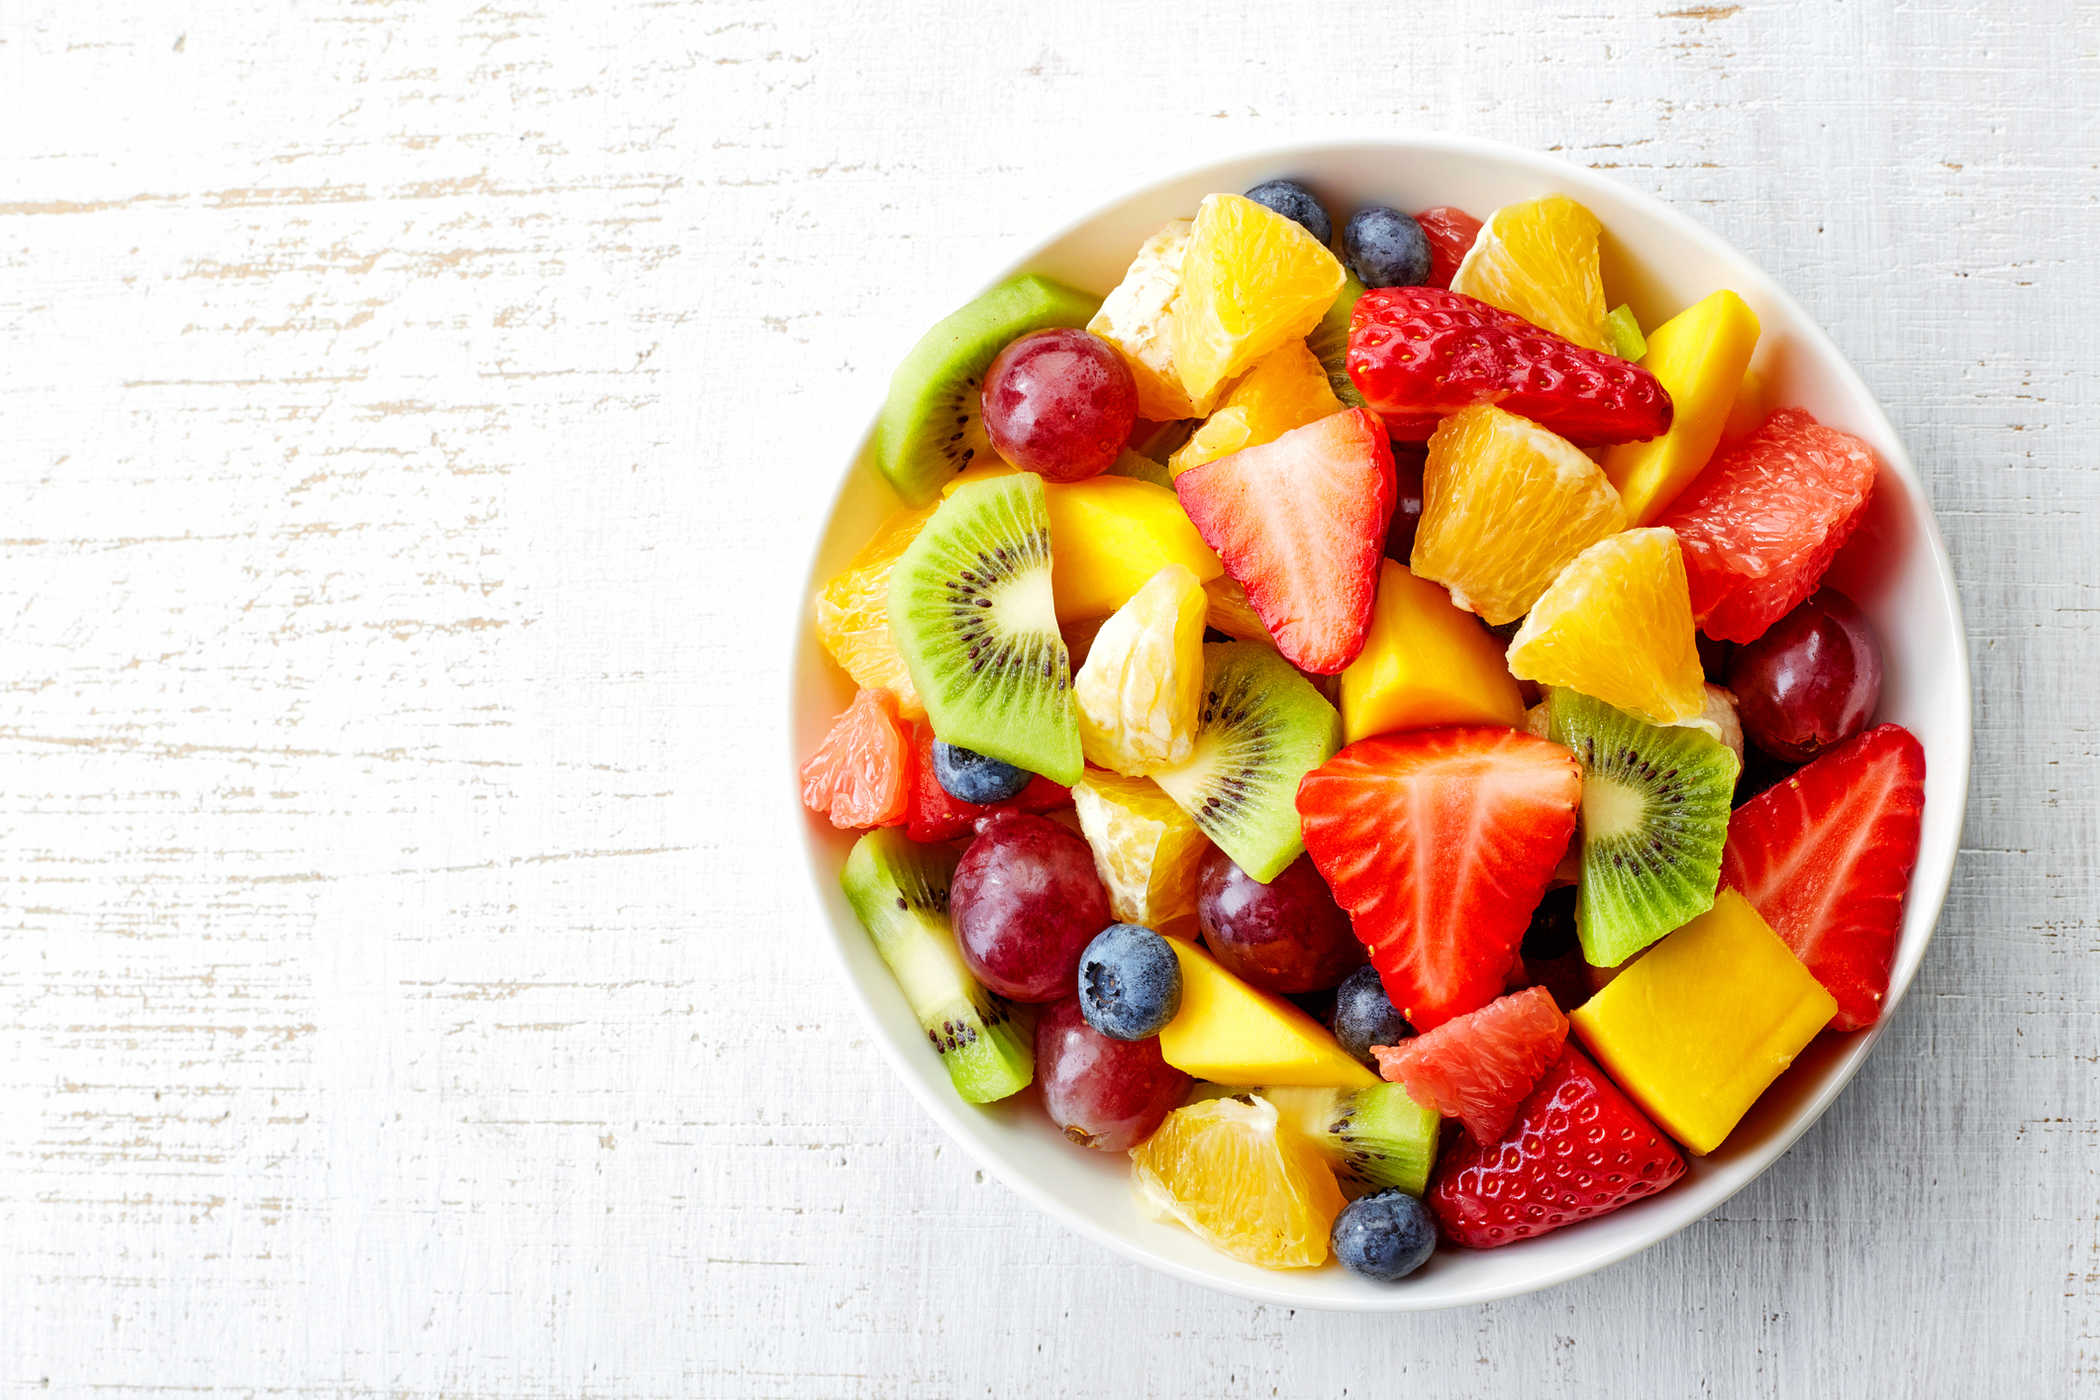 Mangiare frutta fresca per ridurre il rischio di diabete